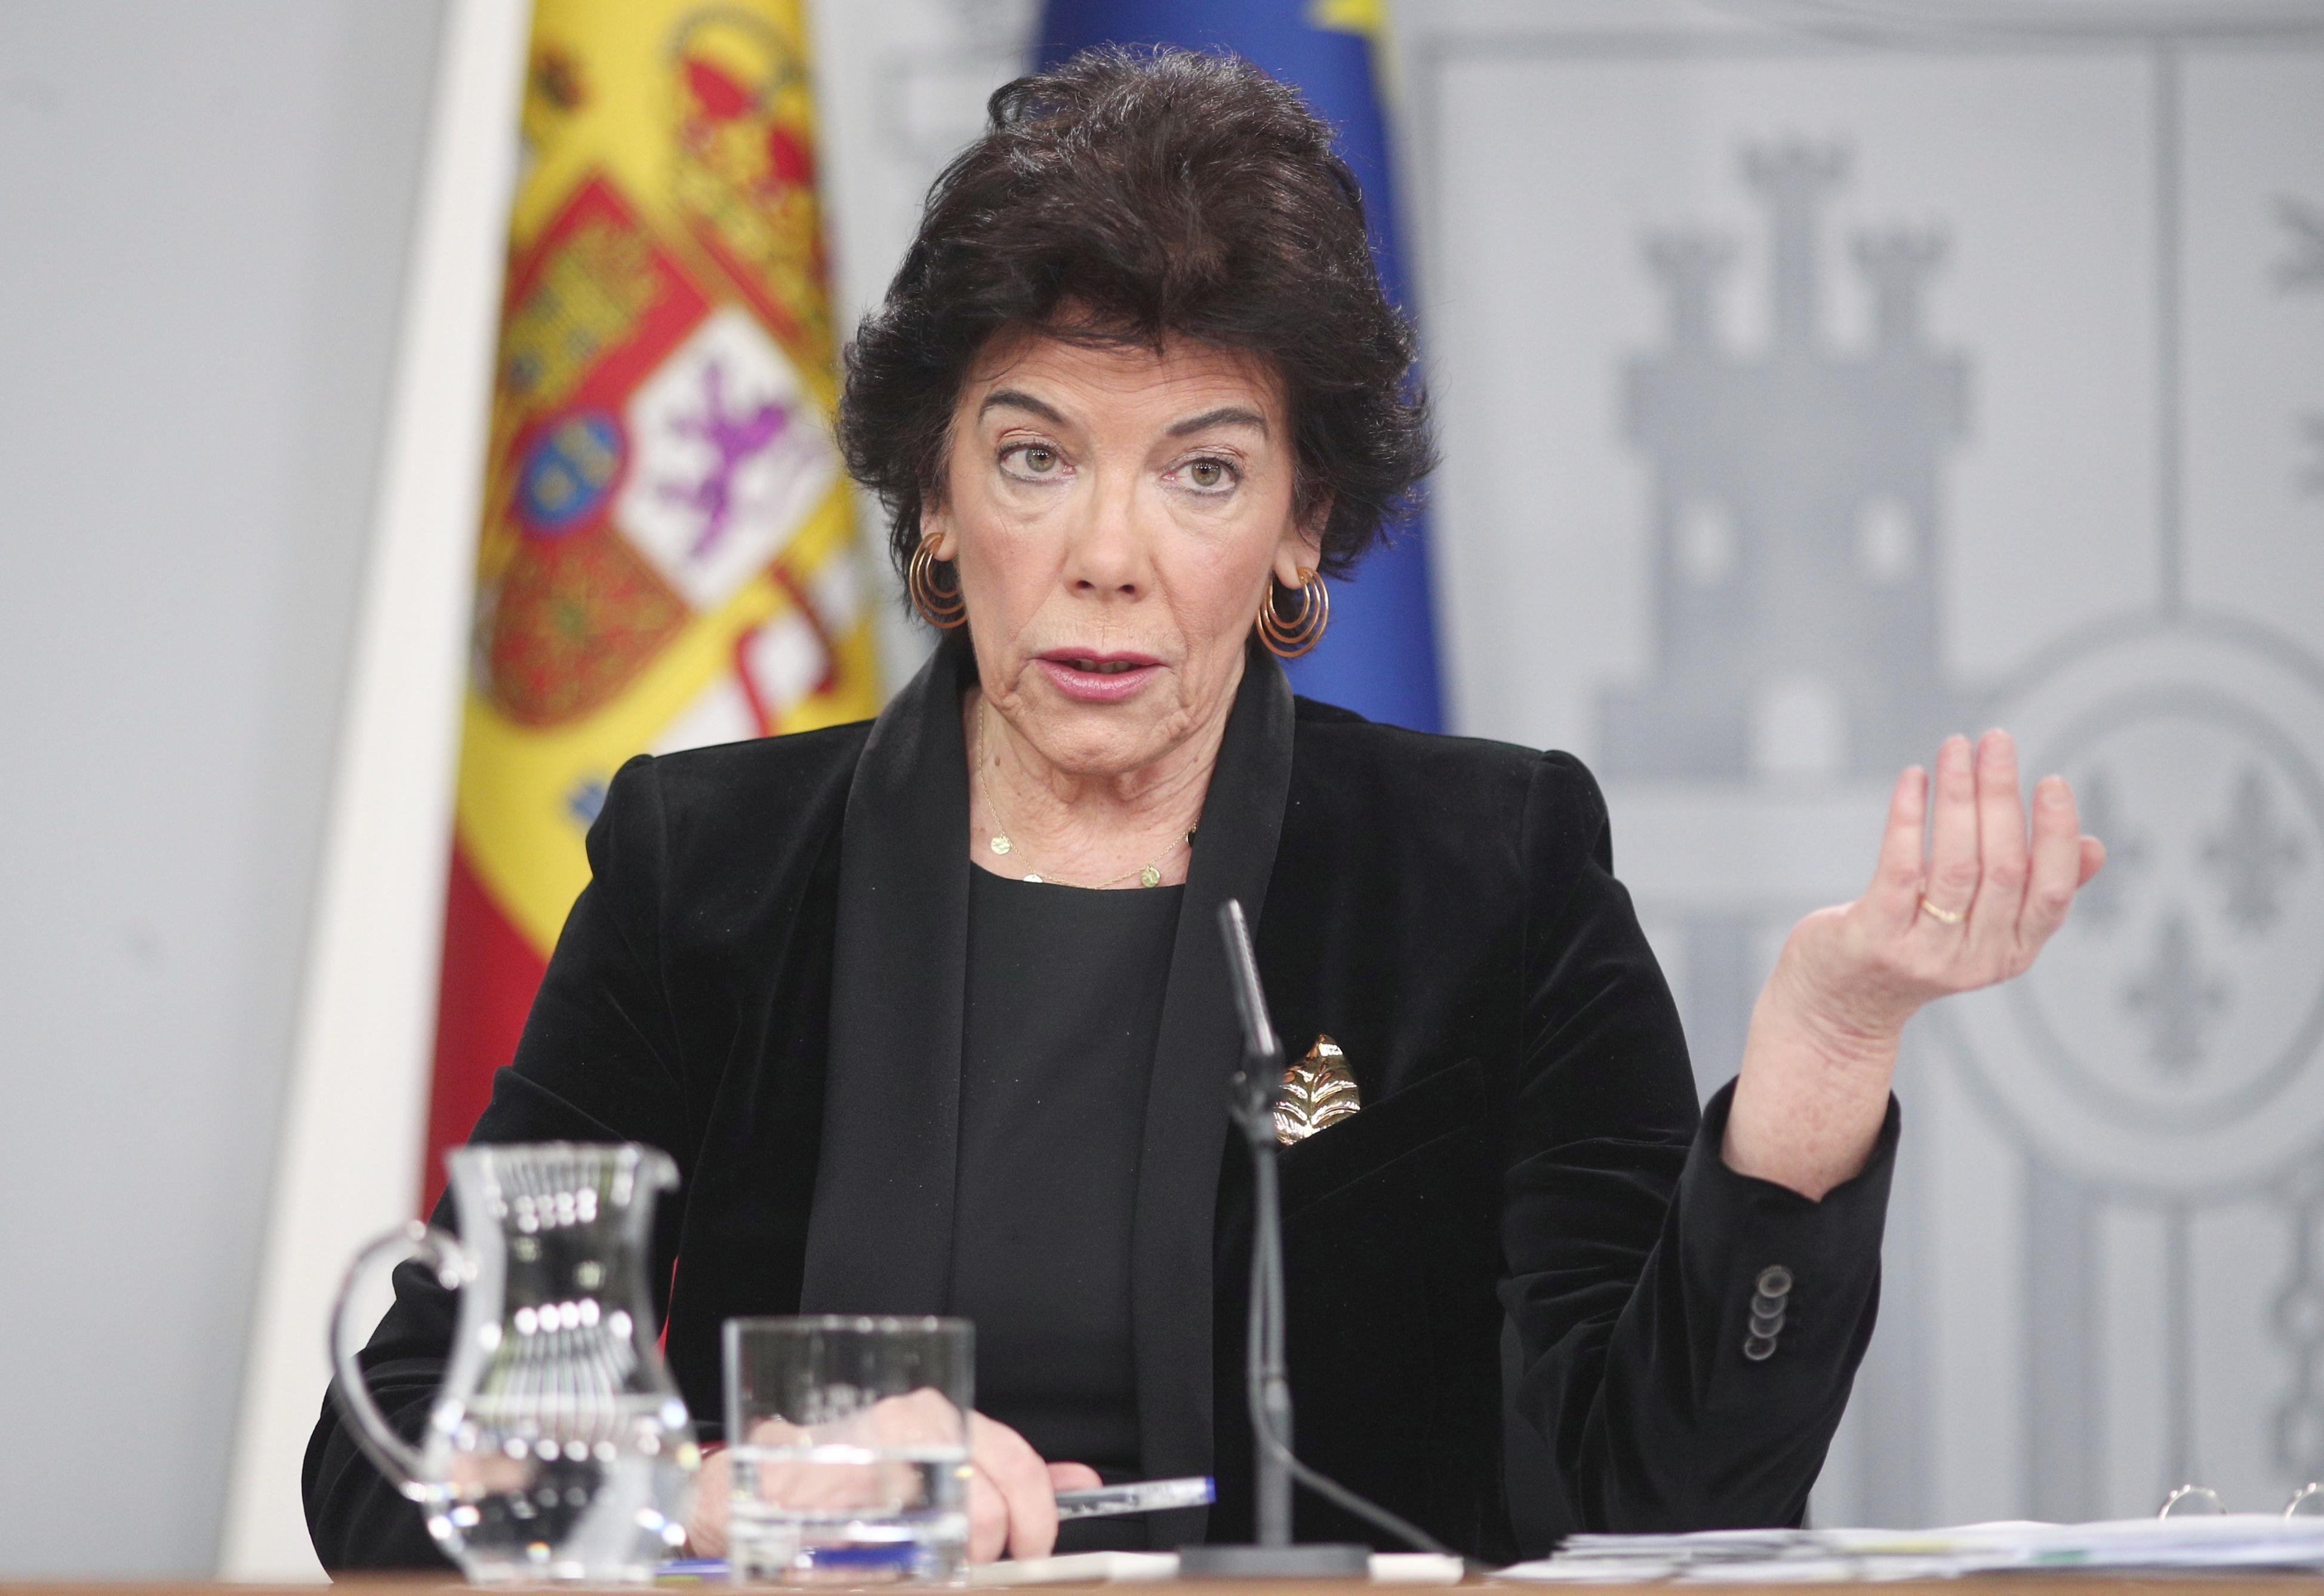 La portavoz y ministra de Educación en funciones Isabel Celaá durante la rueda de prensa tras el Consejo de Ministros en La Moncloa Madrid (España). Fuente: EP.